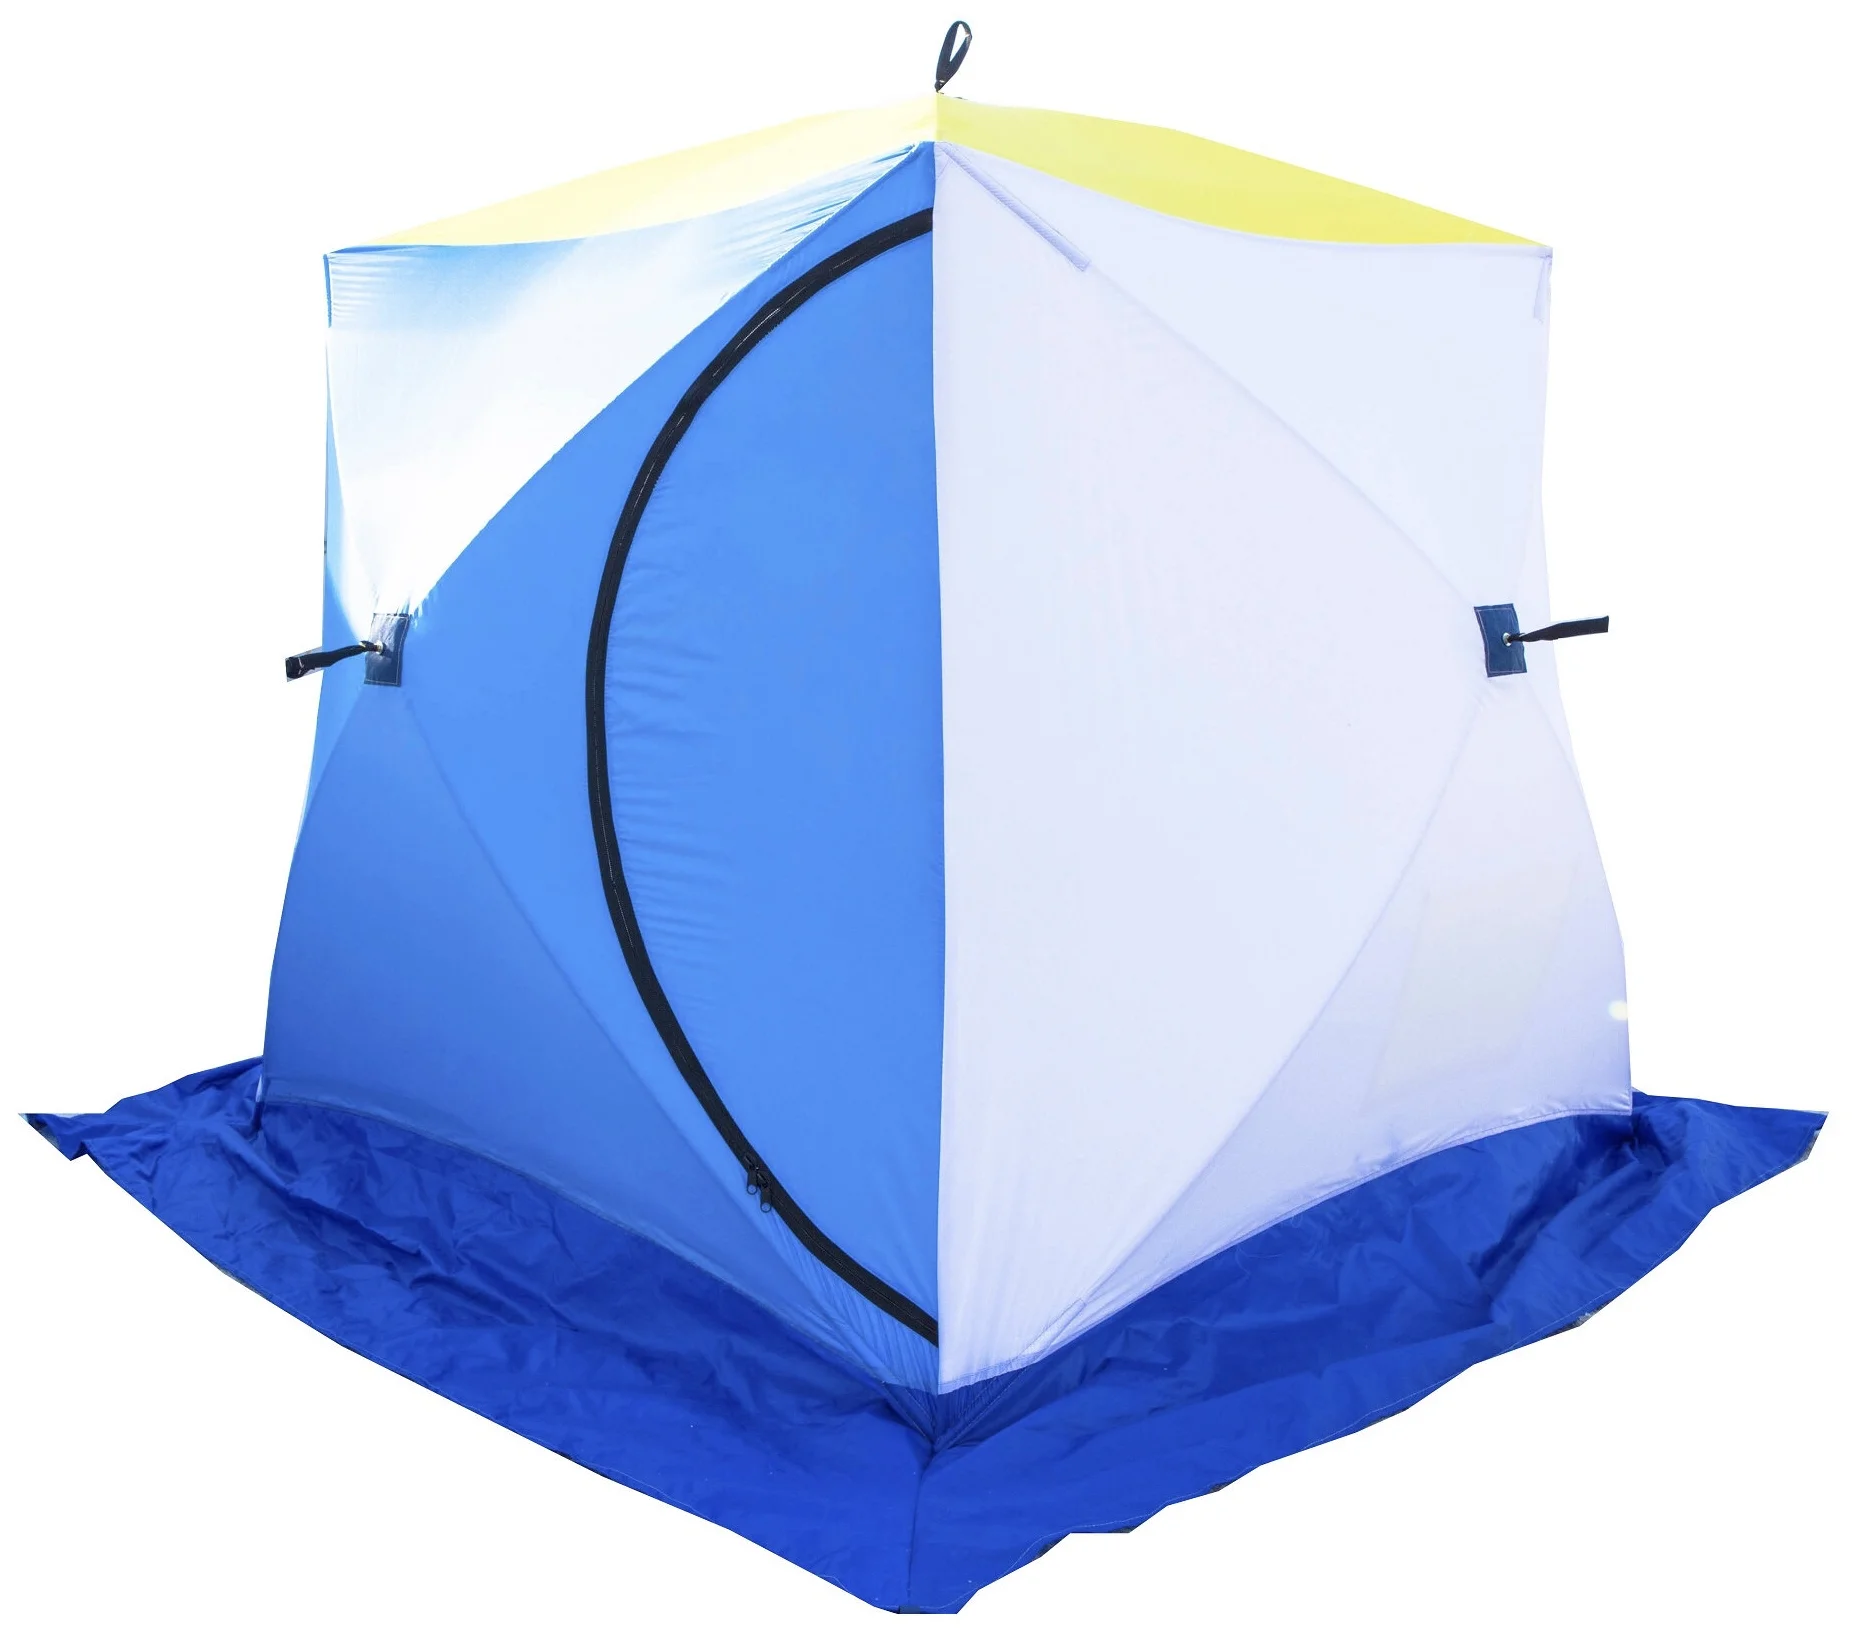 СТЭК Куб 2 - палатка для рыбалки 2-местная